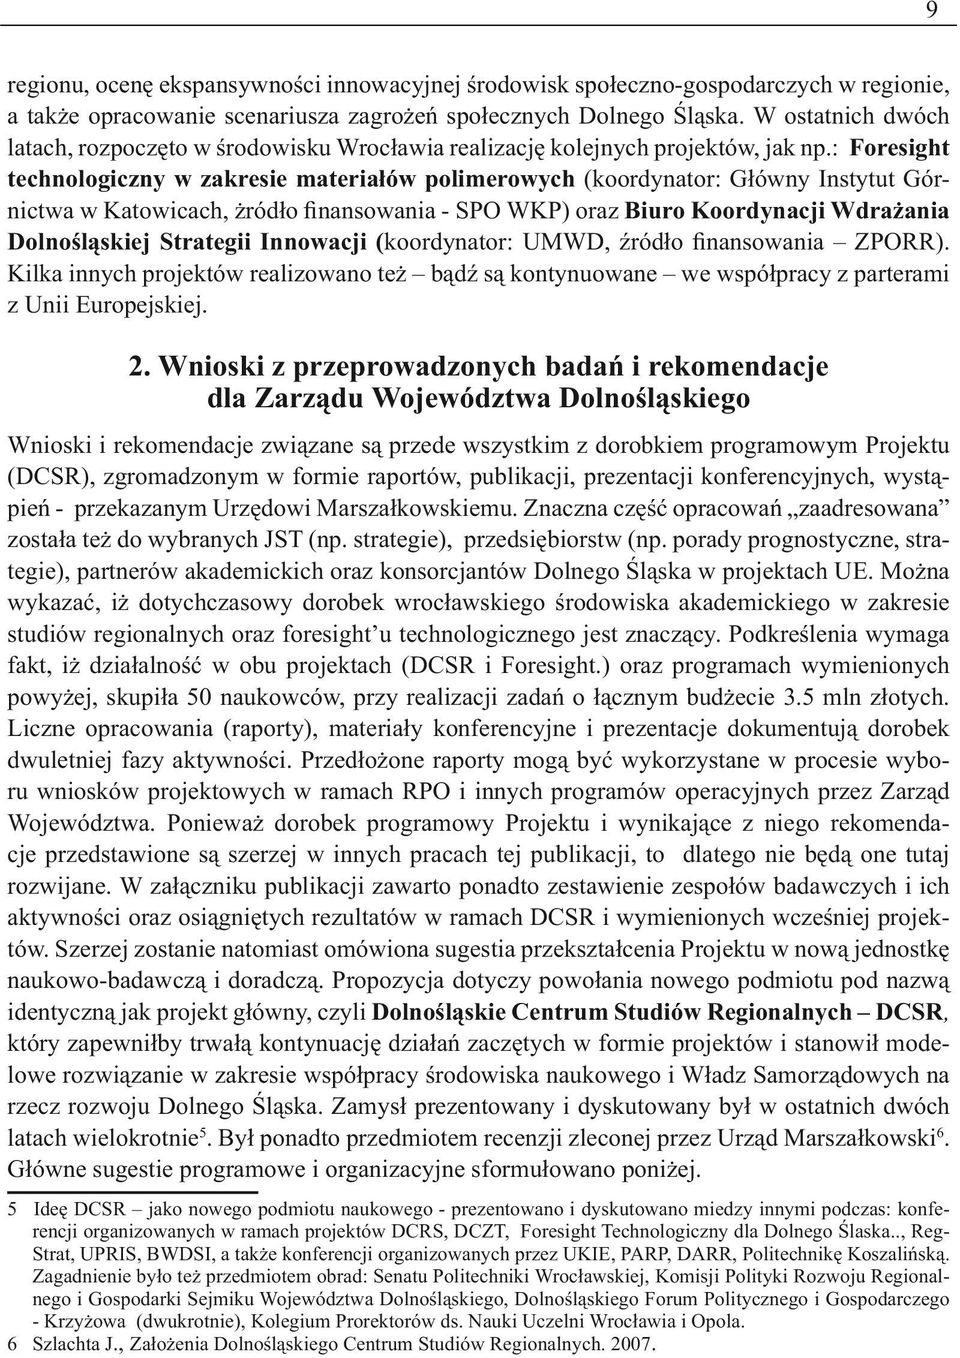 : Foresight technologiczny w zakresie materiałów polimerowych (koordynator: Główny Instytut Górnictwa w Katowicach, żródło finansowania - SPO WKP) oraz Biuro Koordynacji Wdrażania Dolnośląskiej